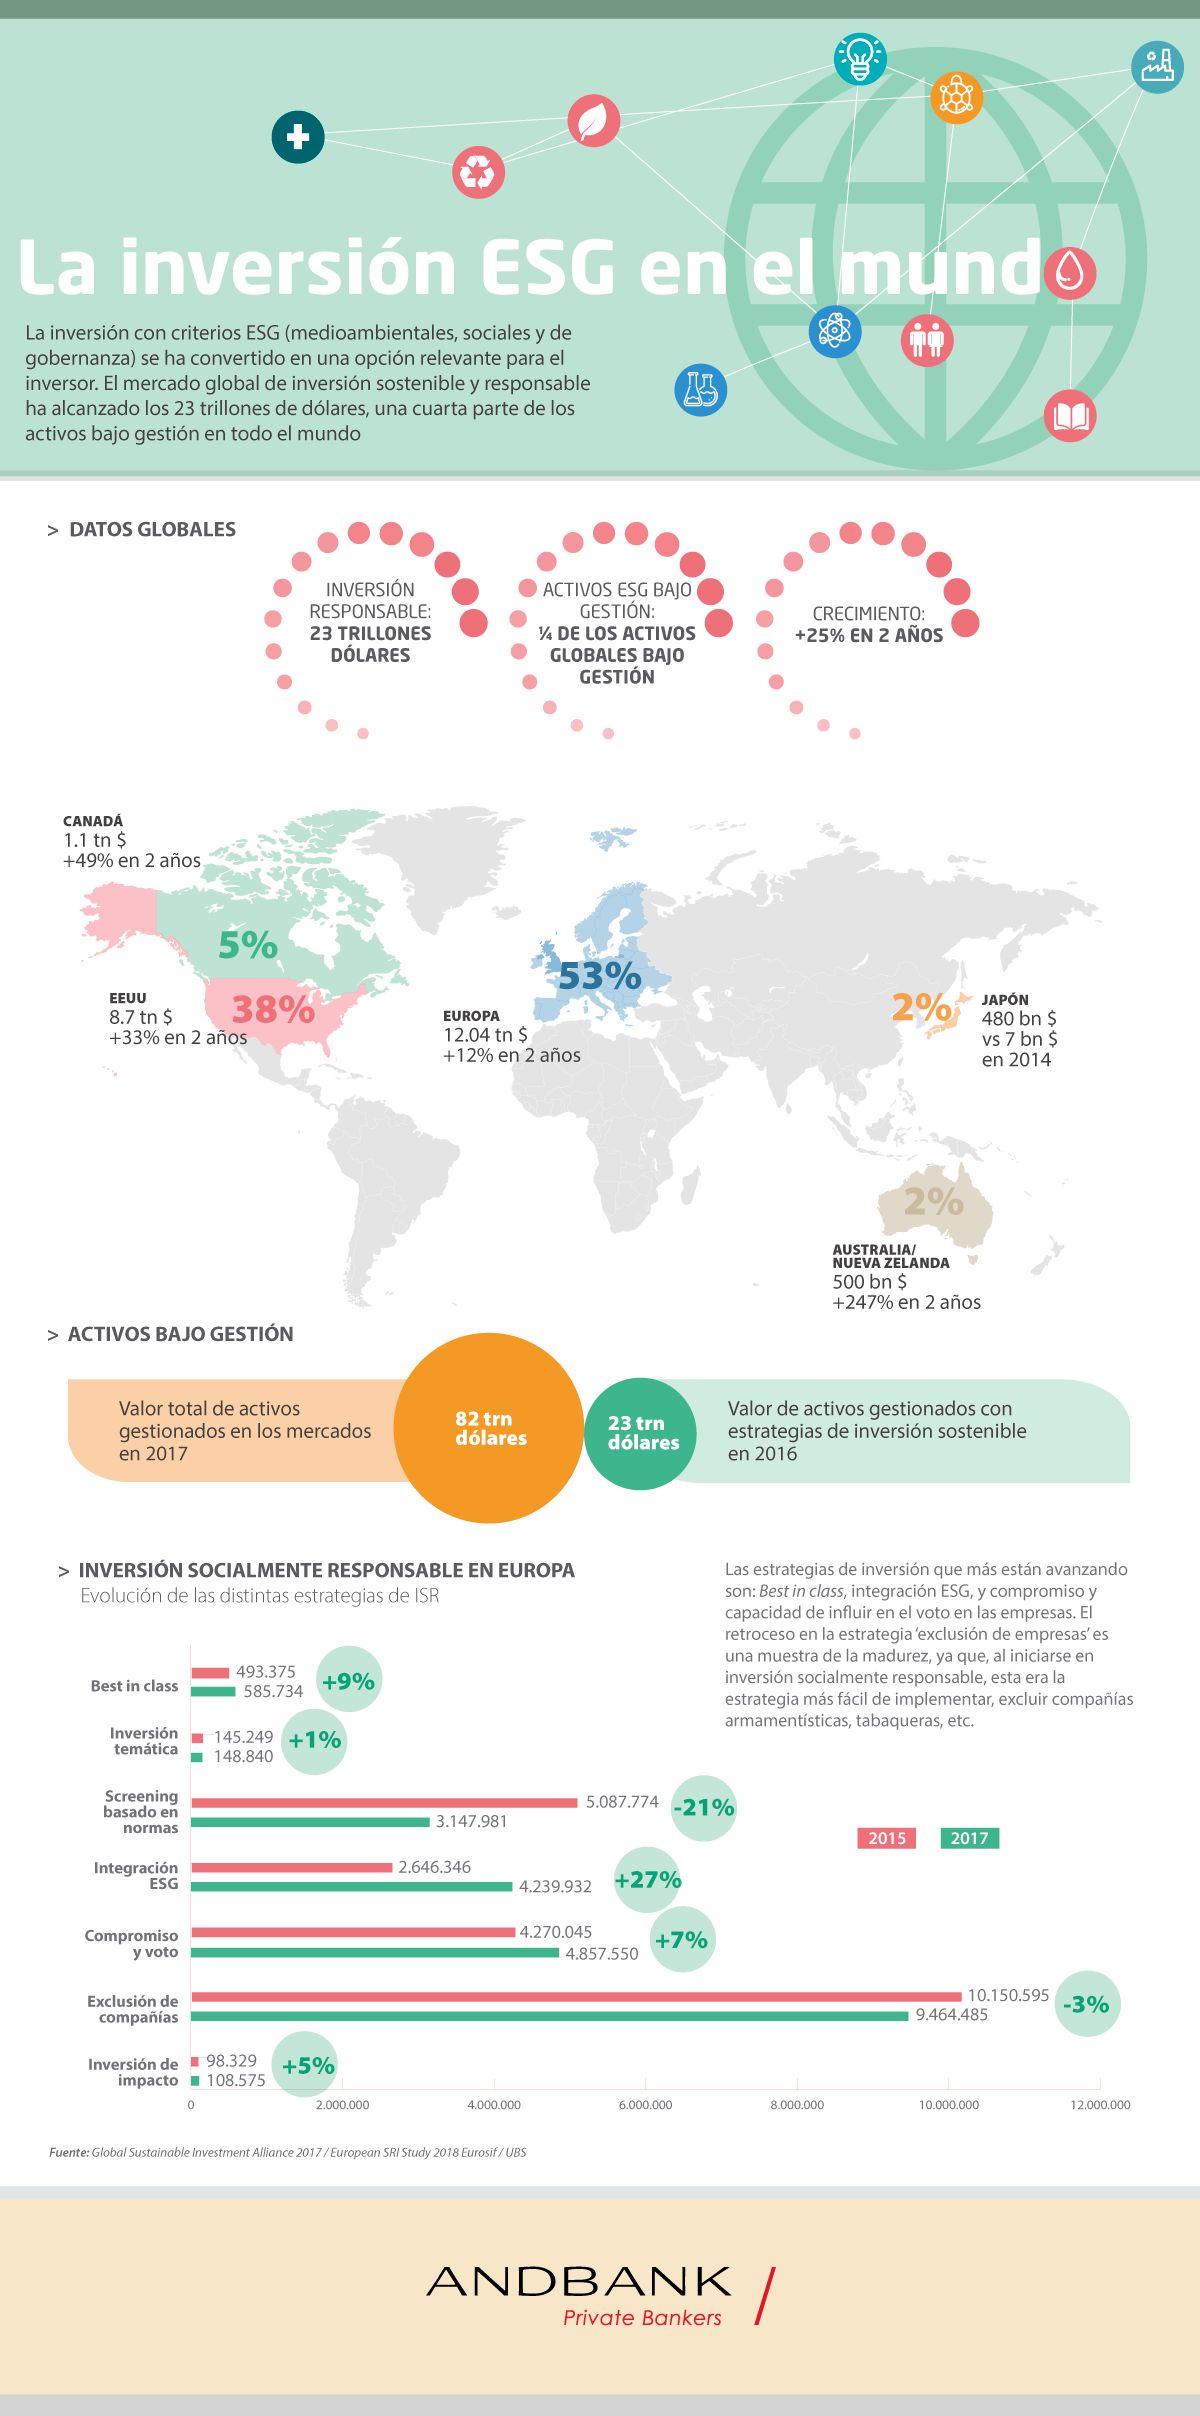 Infografia inversion ESG en el mundo. Sostenibilidad e impacto social